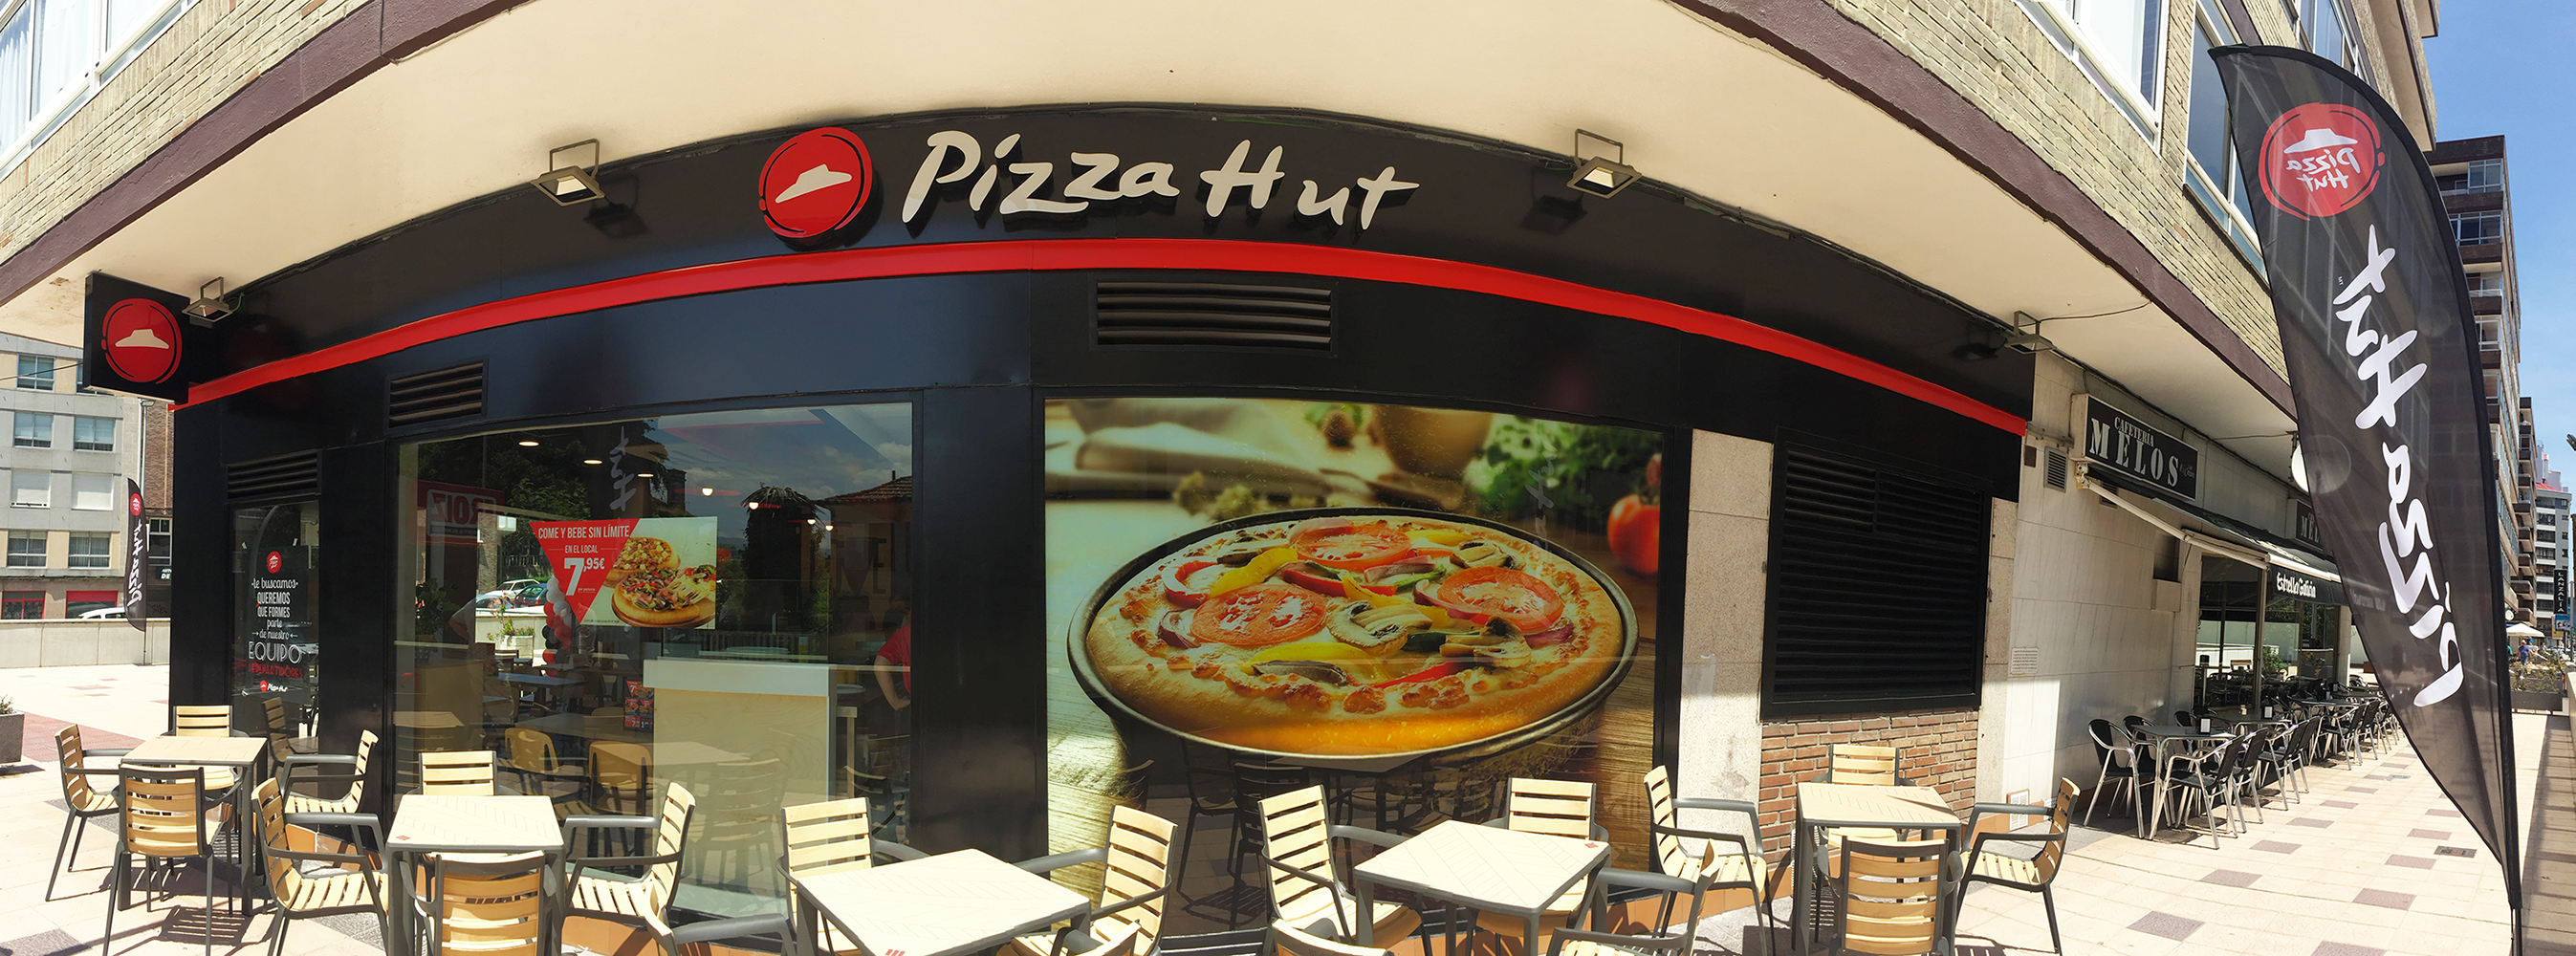 nuevo pizza hut